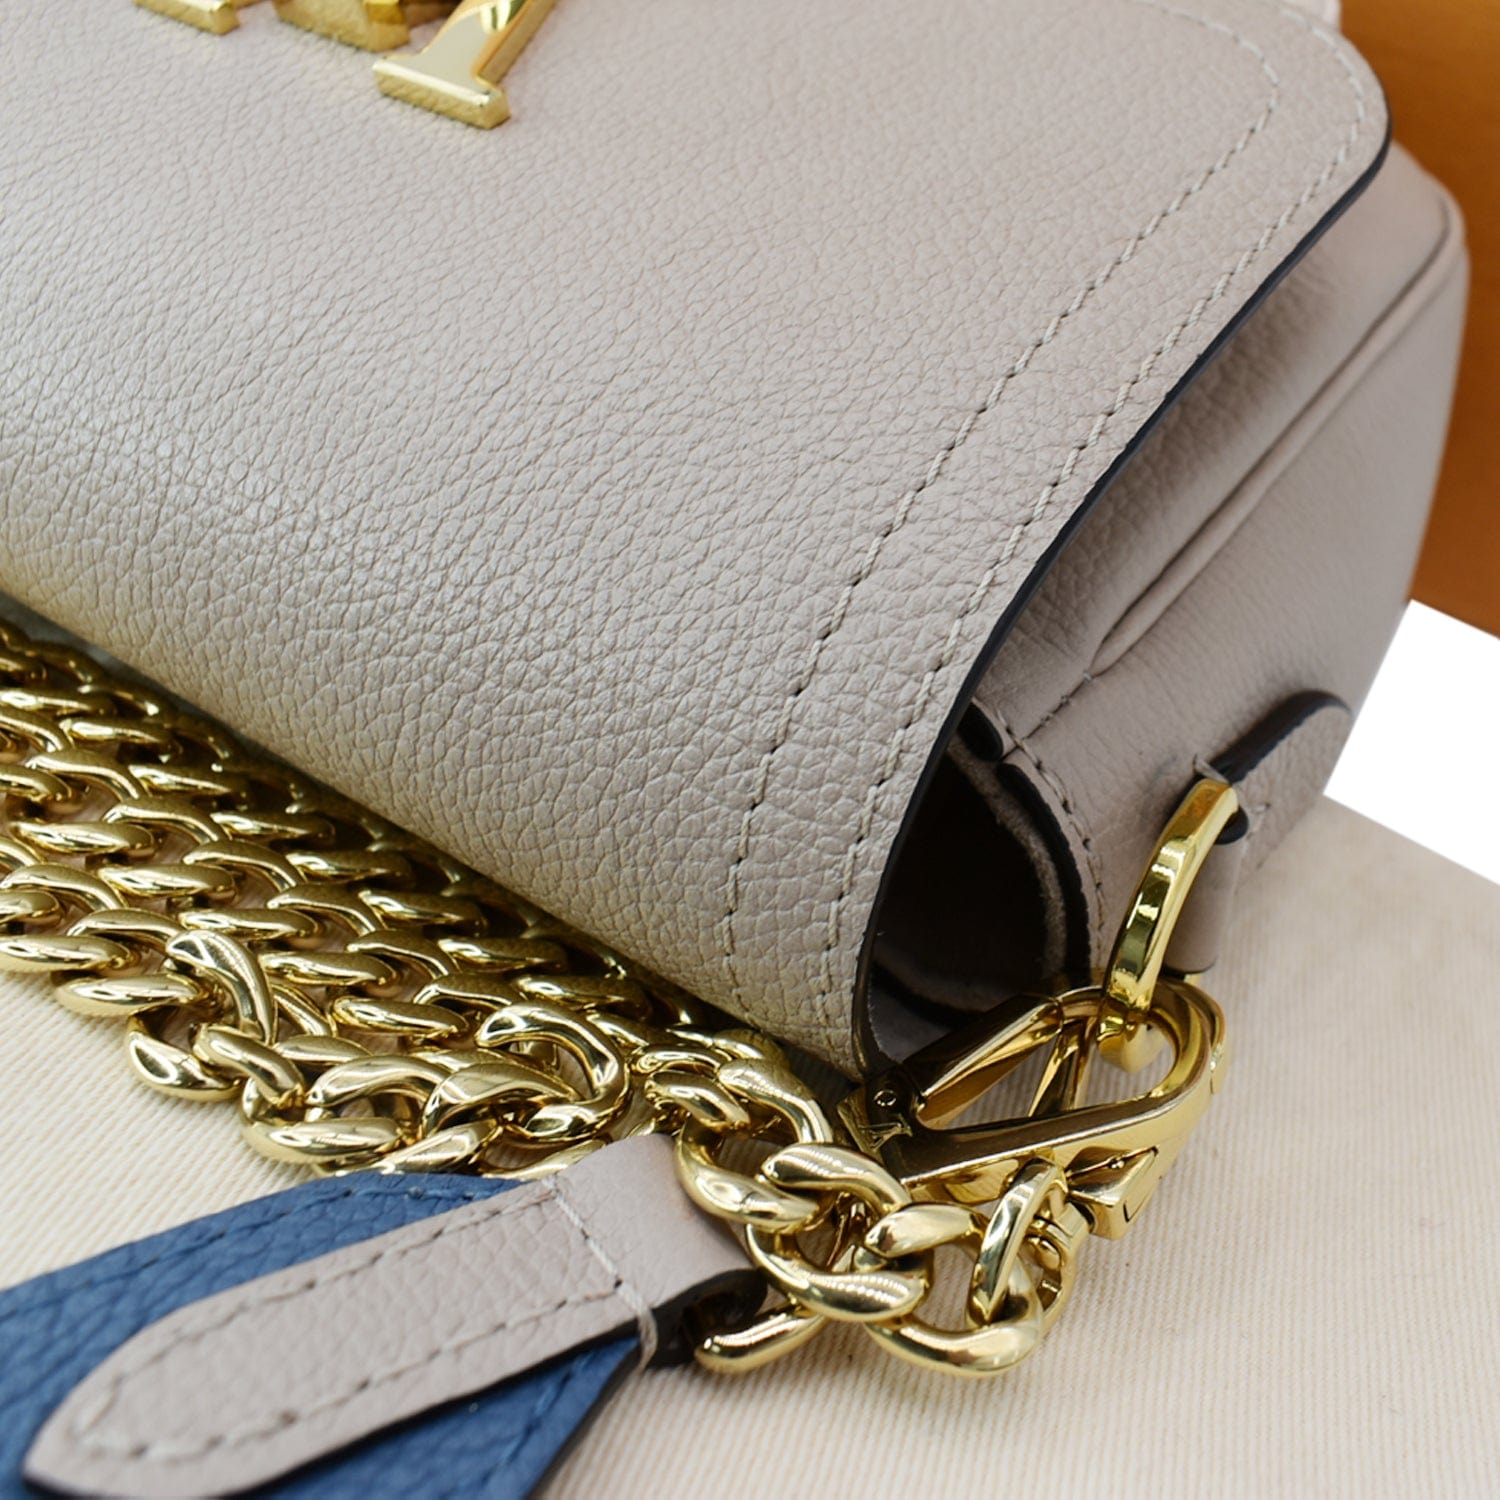 Louis Vuitton - Lockme Tender Bag - Asnières Green/milky White - Leather - Women - Luxury